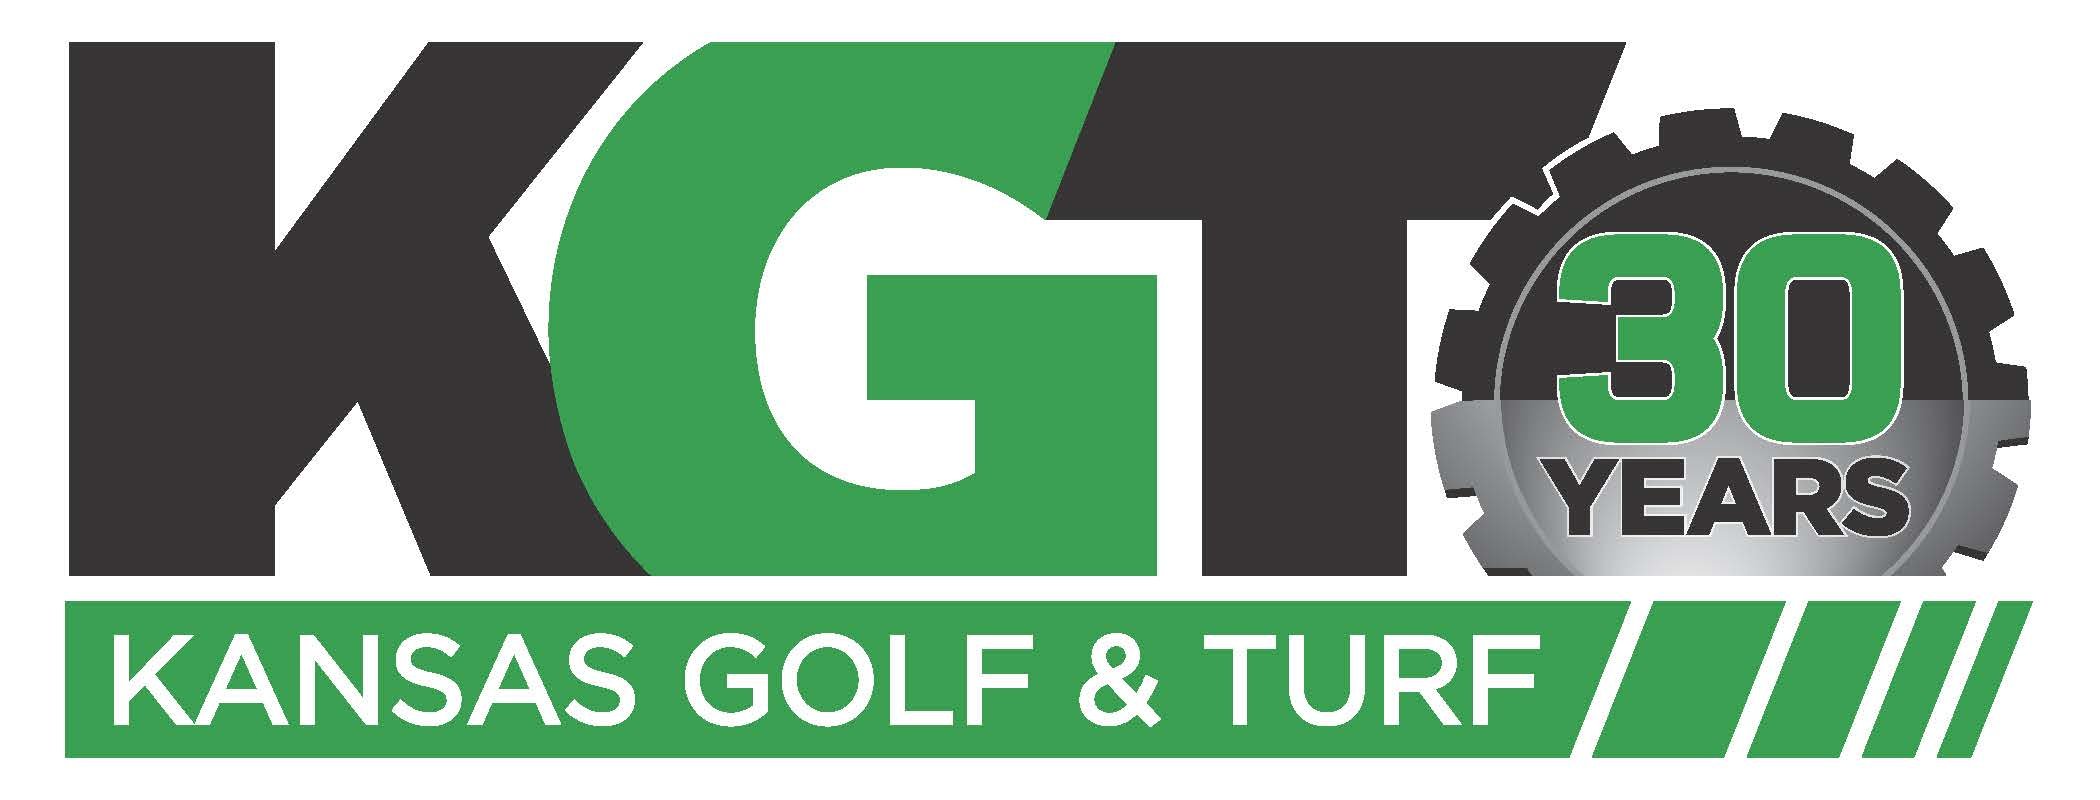 Kansas Golf and Turf 2023 logo.jpg